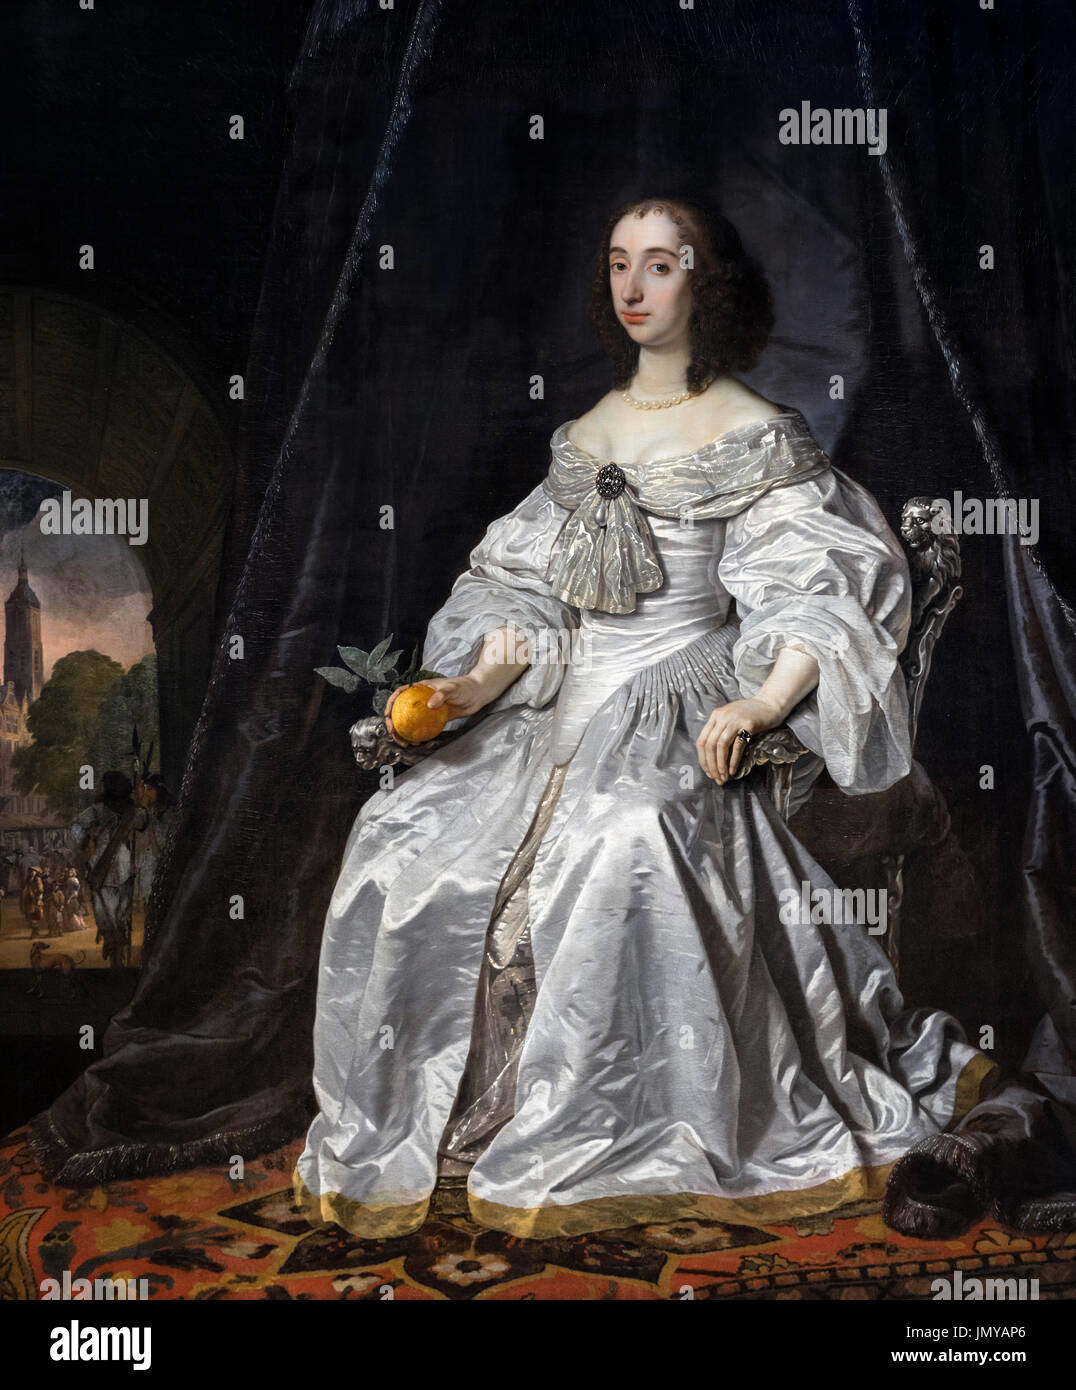 Mary Henrietta Stuart (1631-1660), Witwe von William II, Prinz von Oranien und Mutter von William III, König von England. Gemälde von Bartholomeus van der Helst, Öl auf Leinwand, 1652. Stockfoto